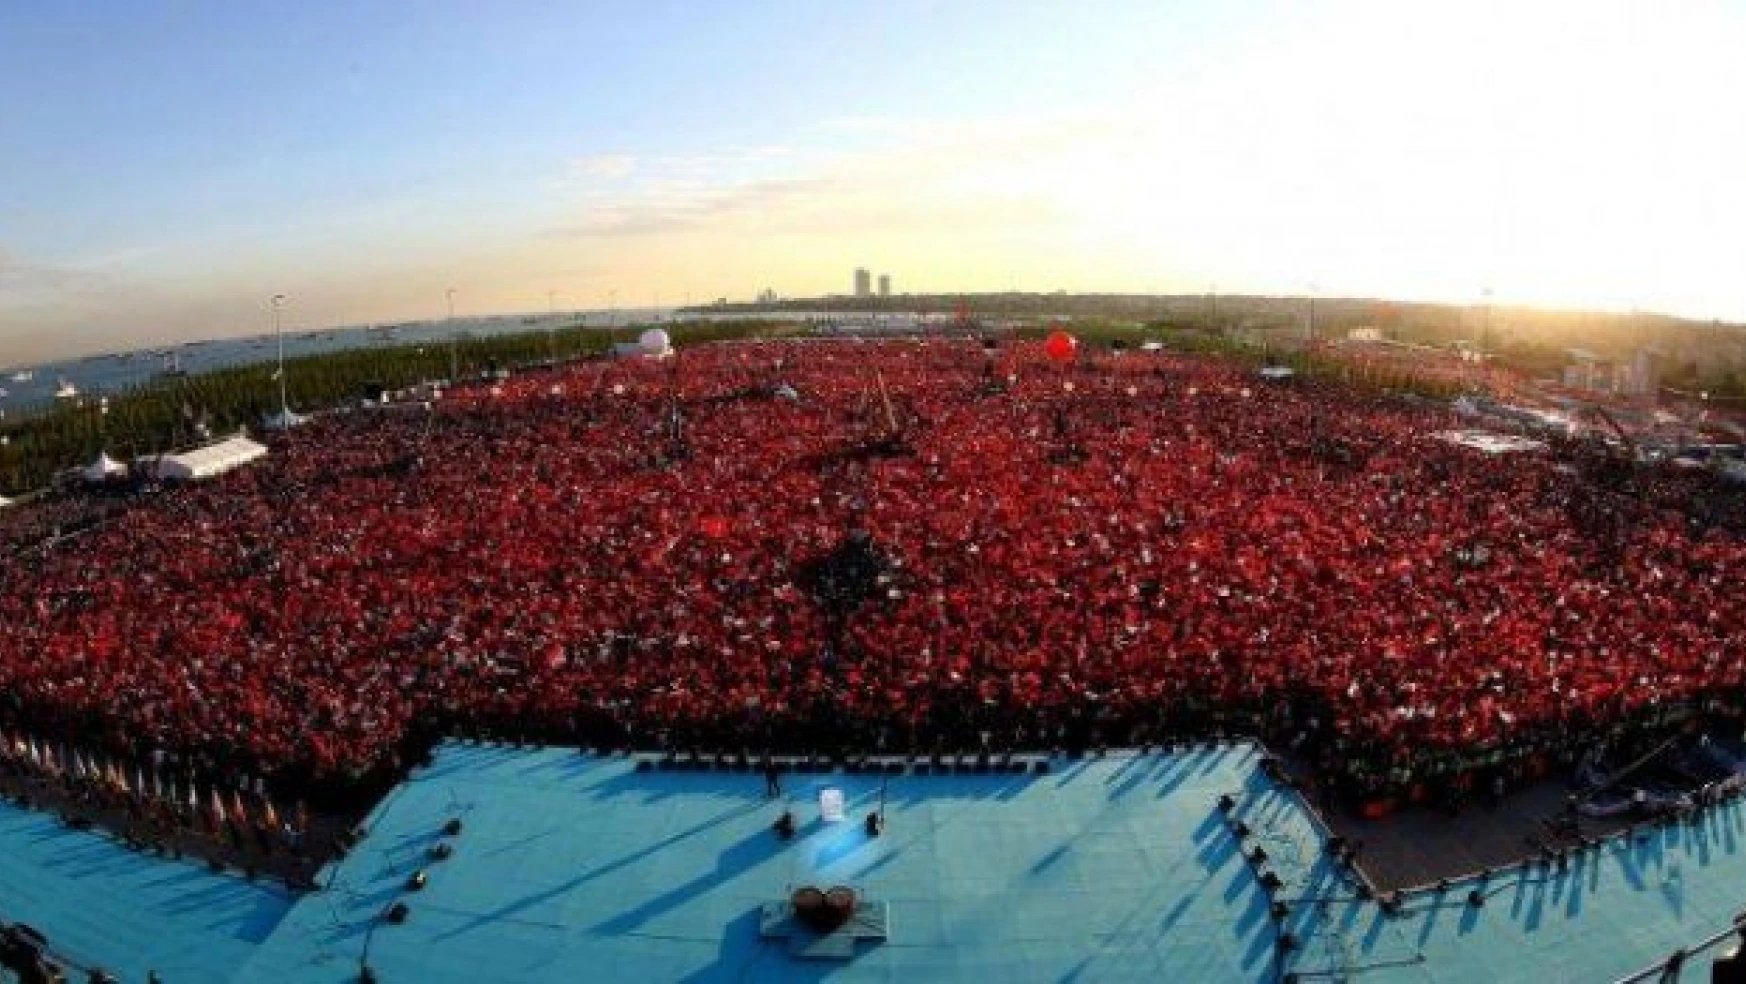 İstanbul'un fethinin 563. yılına görkemli kutlama